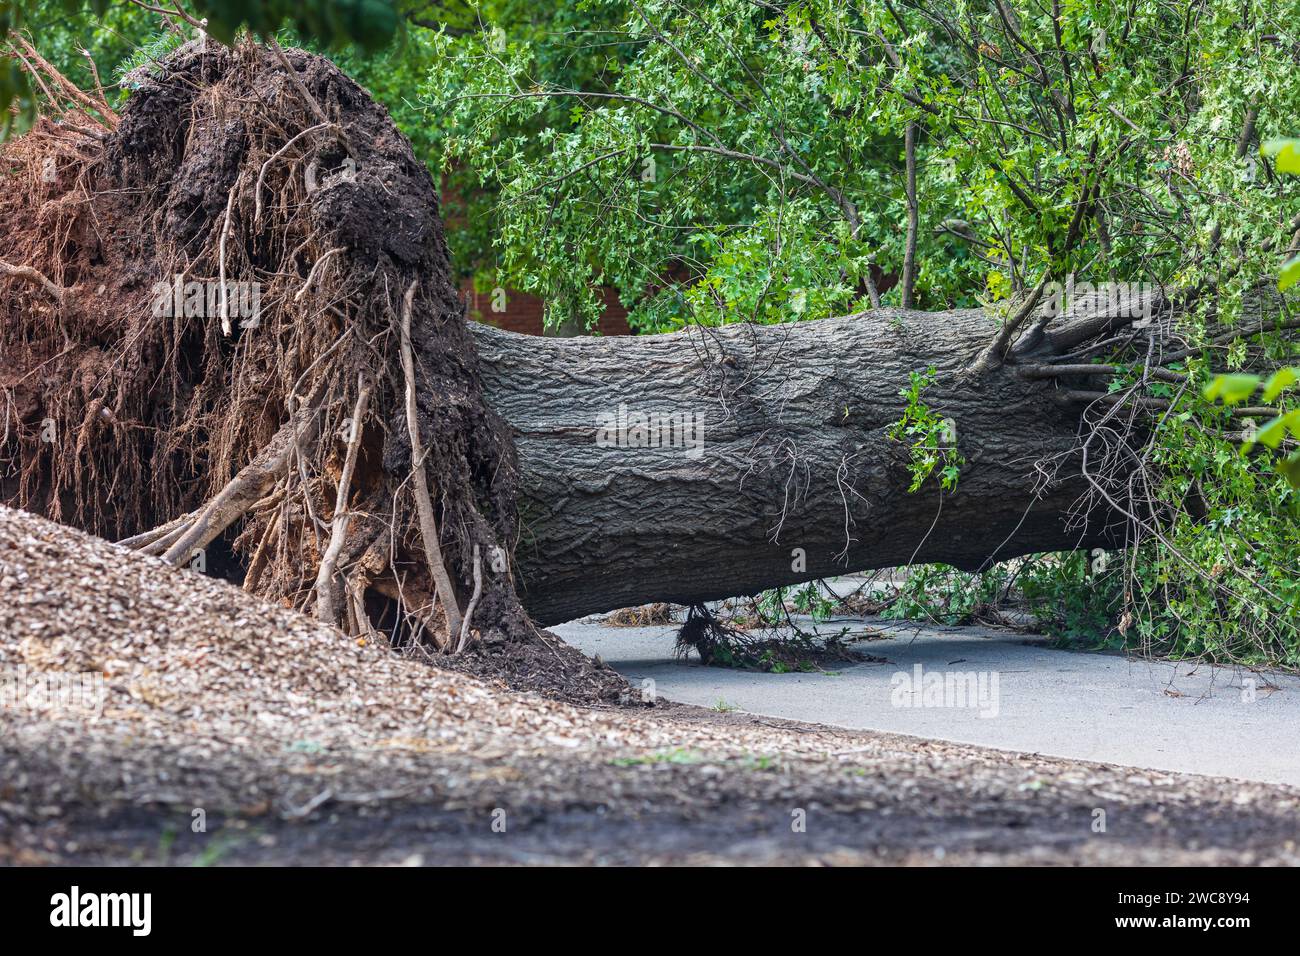 Un gigantesque arbre de bois dur vieux repose tombé et déraciné à travers un chemin de randonnée dans un parc d'Atlanta après une tempête violente. Banque D'Images